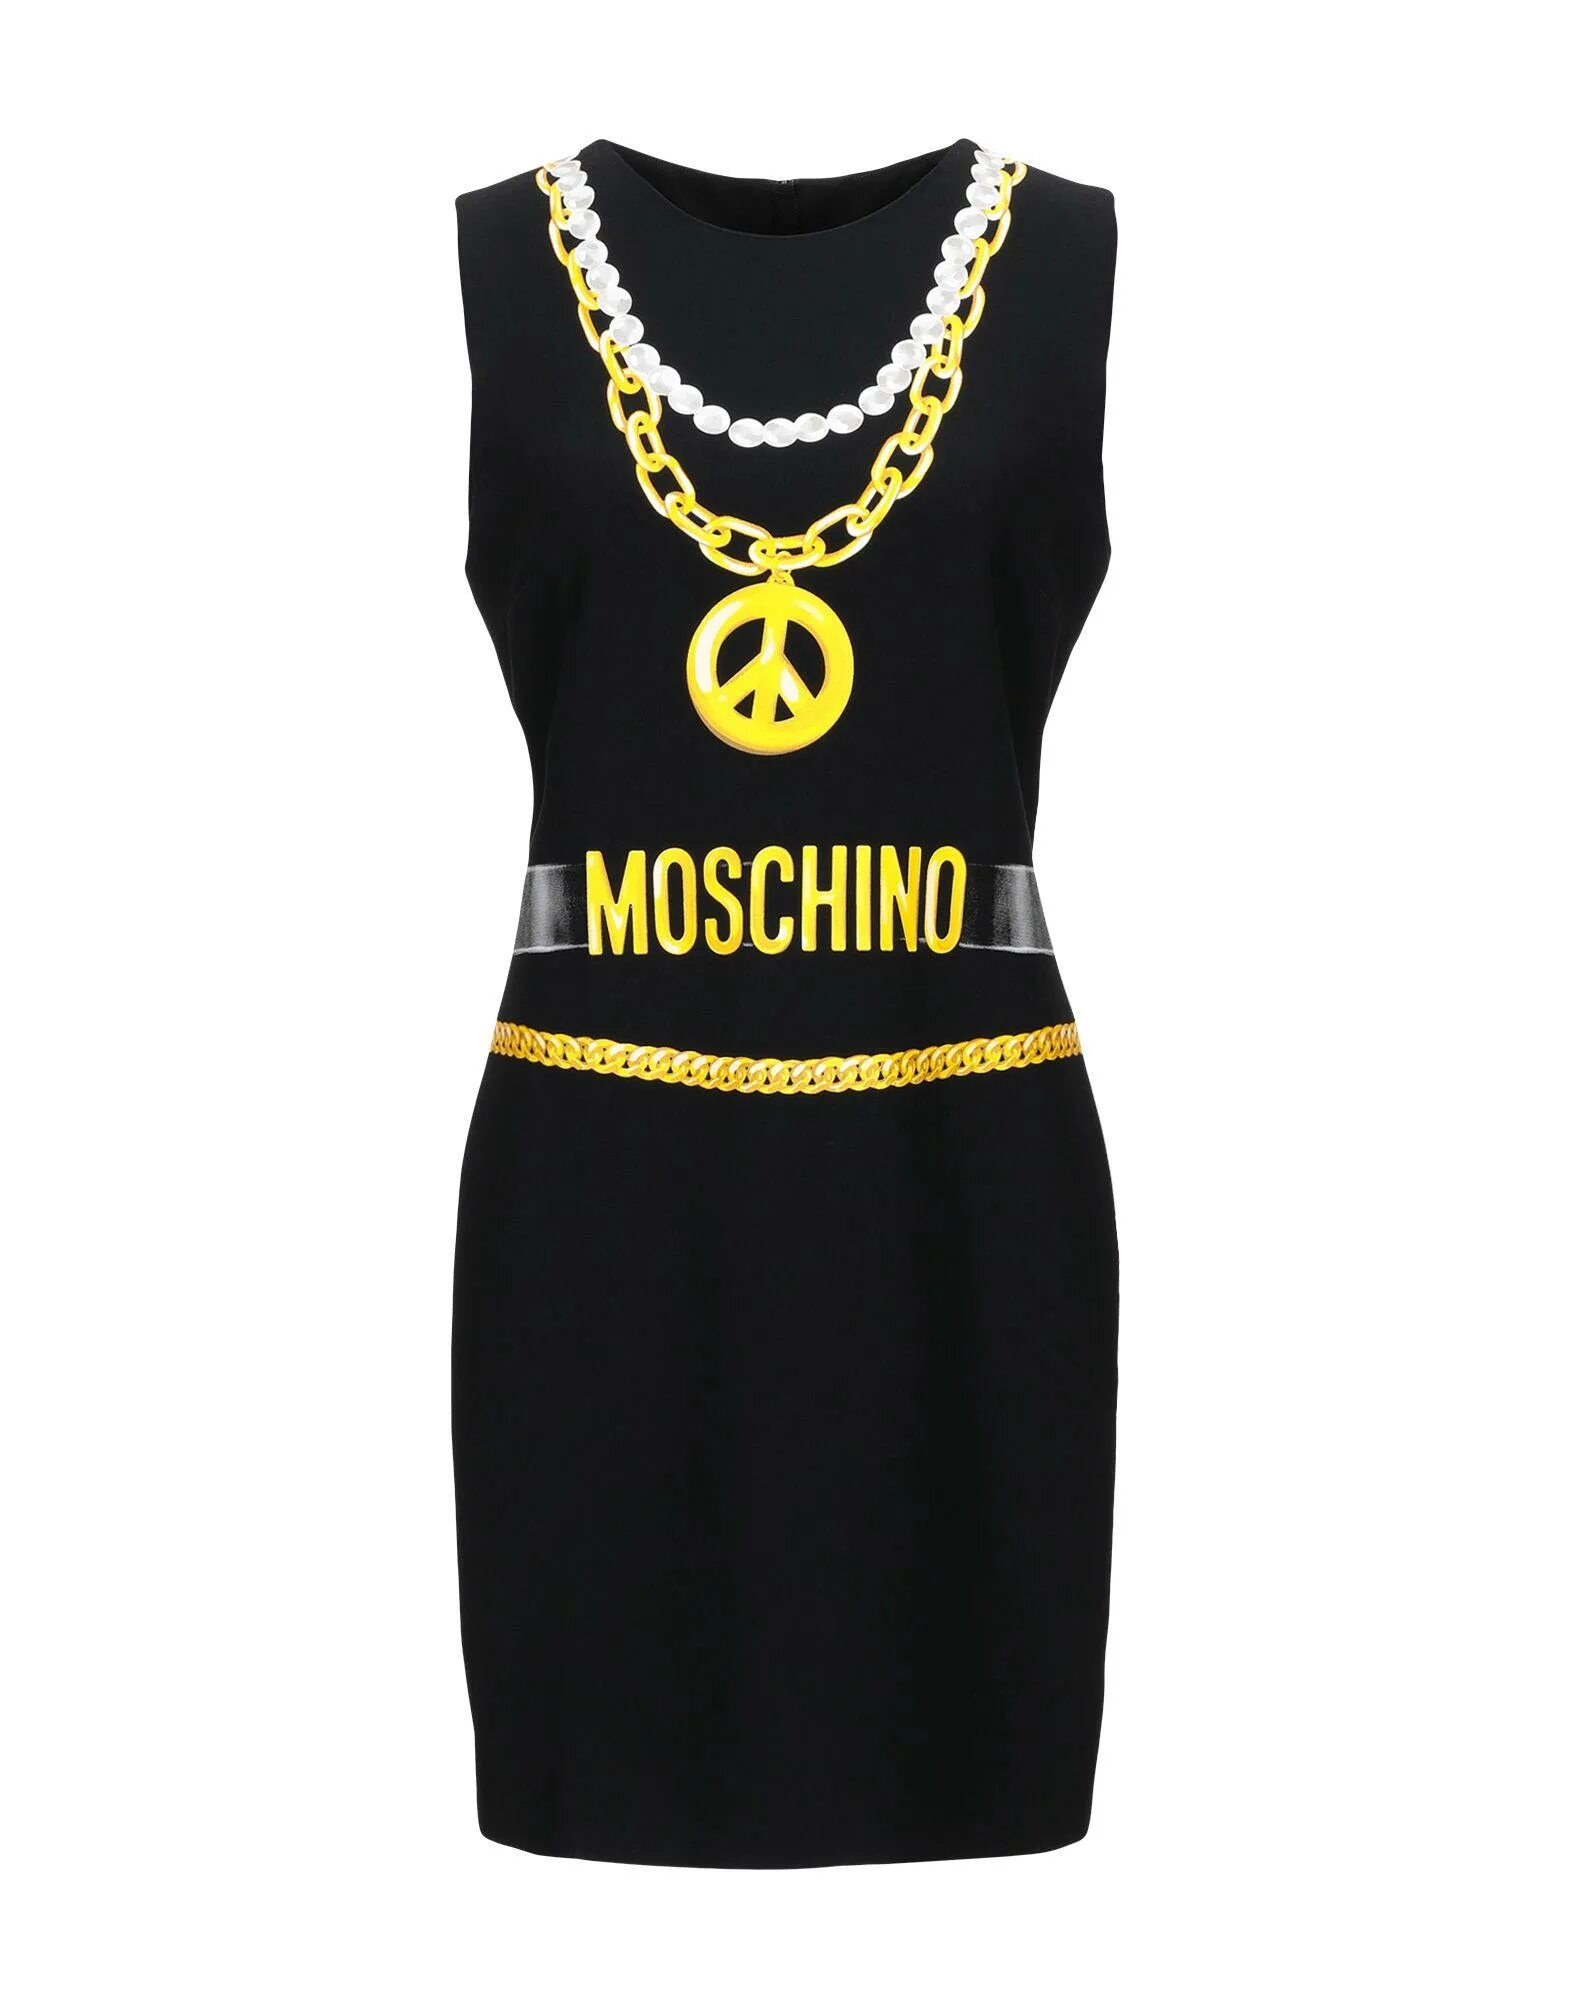 Платье Мошино. Moschino одежда. Платье Москино. Короткое платье Moschino.